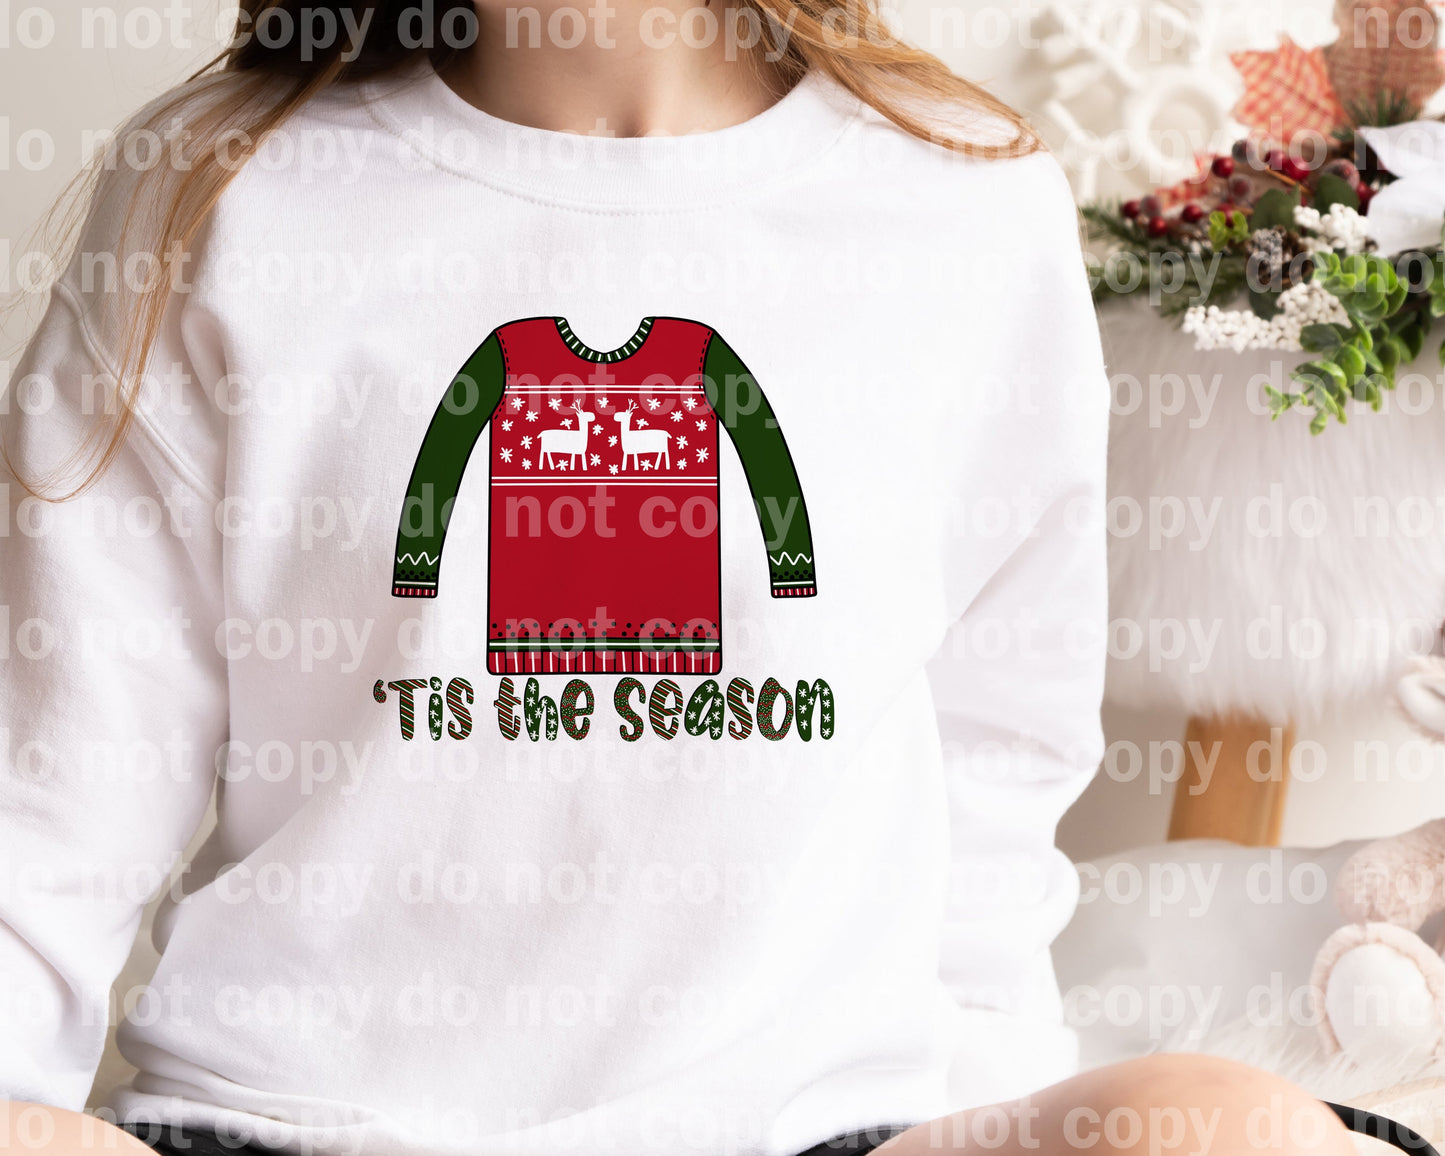 Tis The Season Sweater Estampado de ensueño o estampado por sublimación